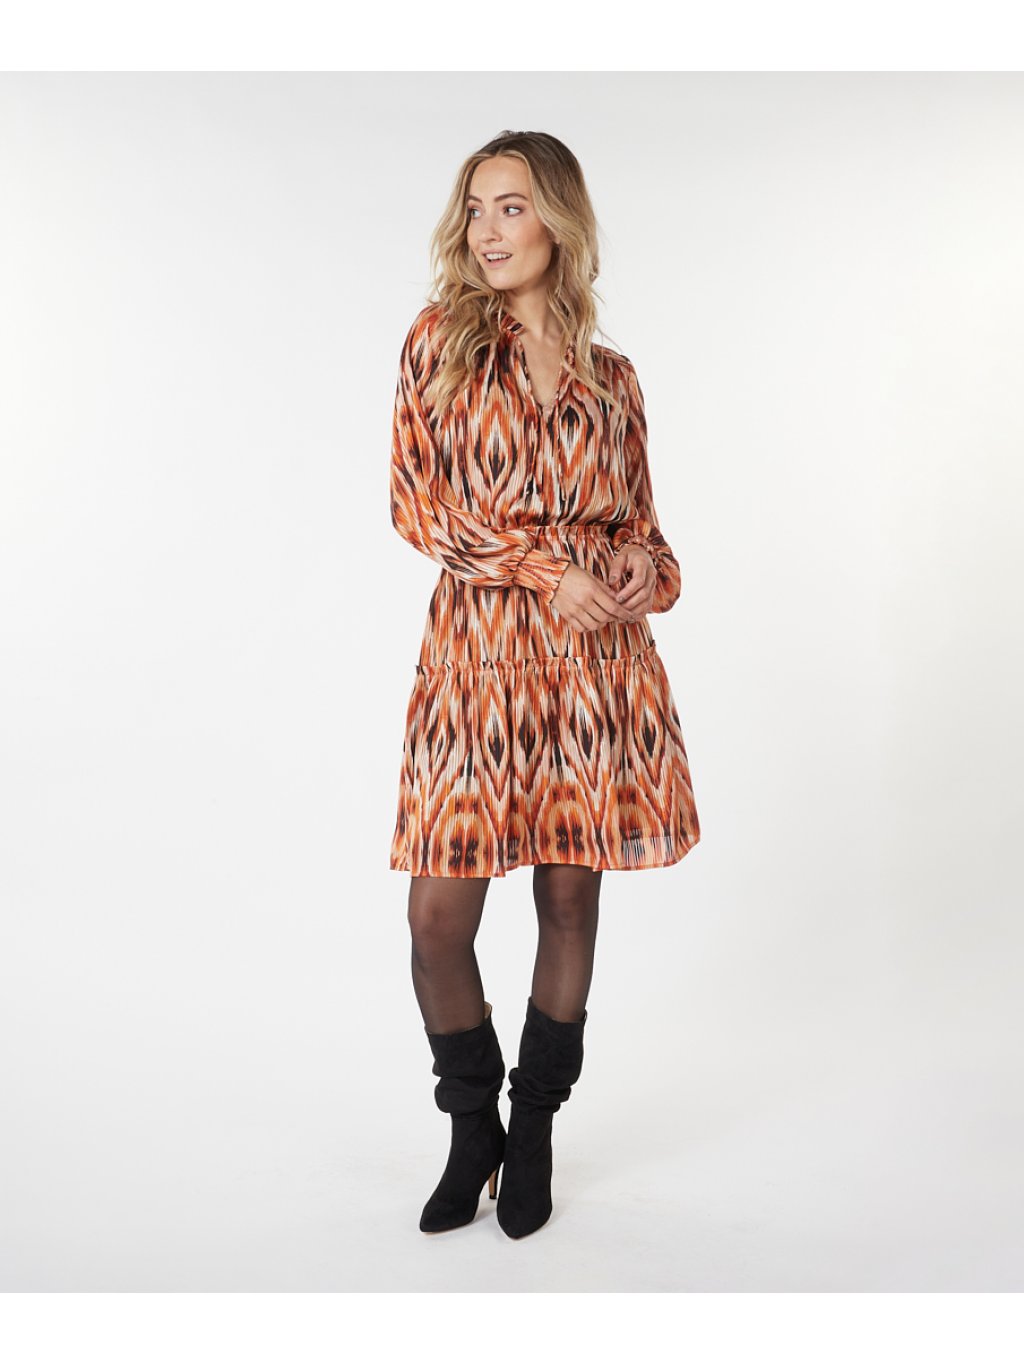 Šaty Esqualo 14715 pomerančové s trendy vzorem 